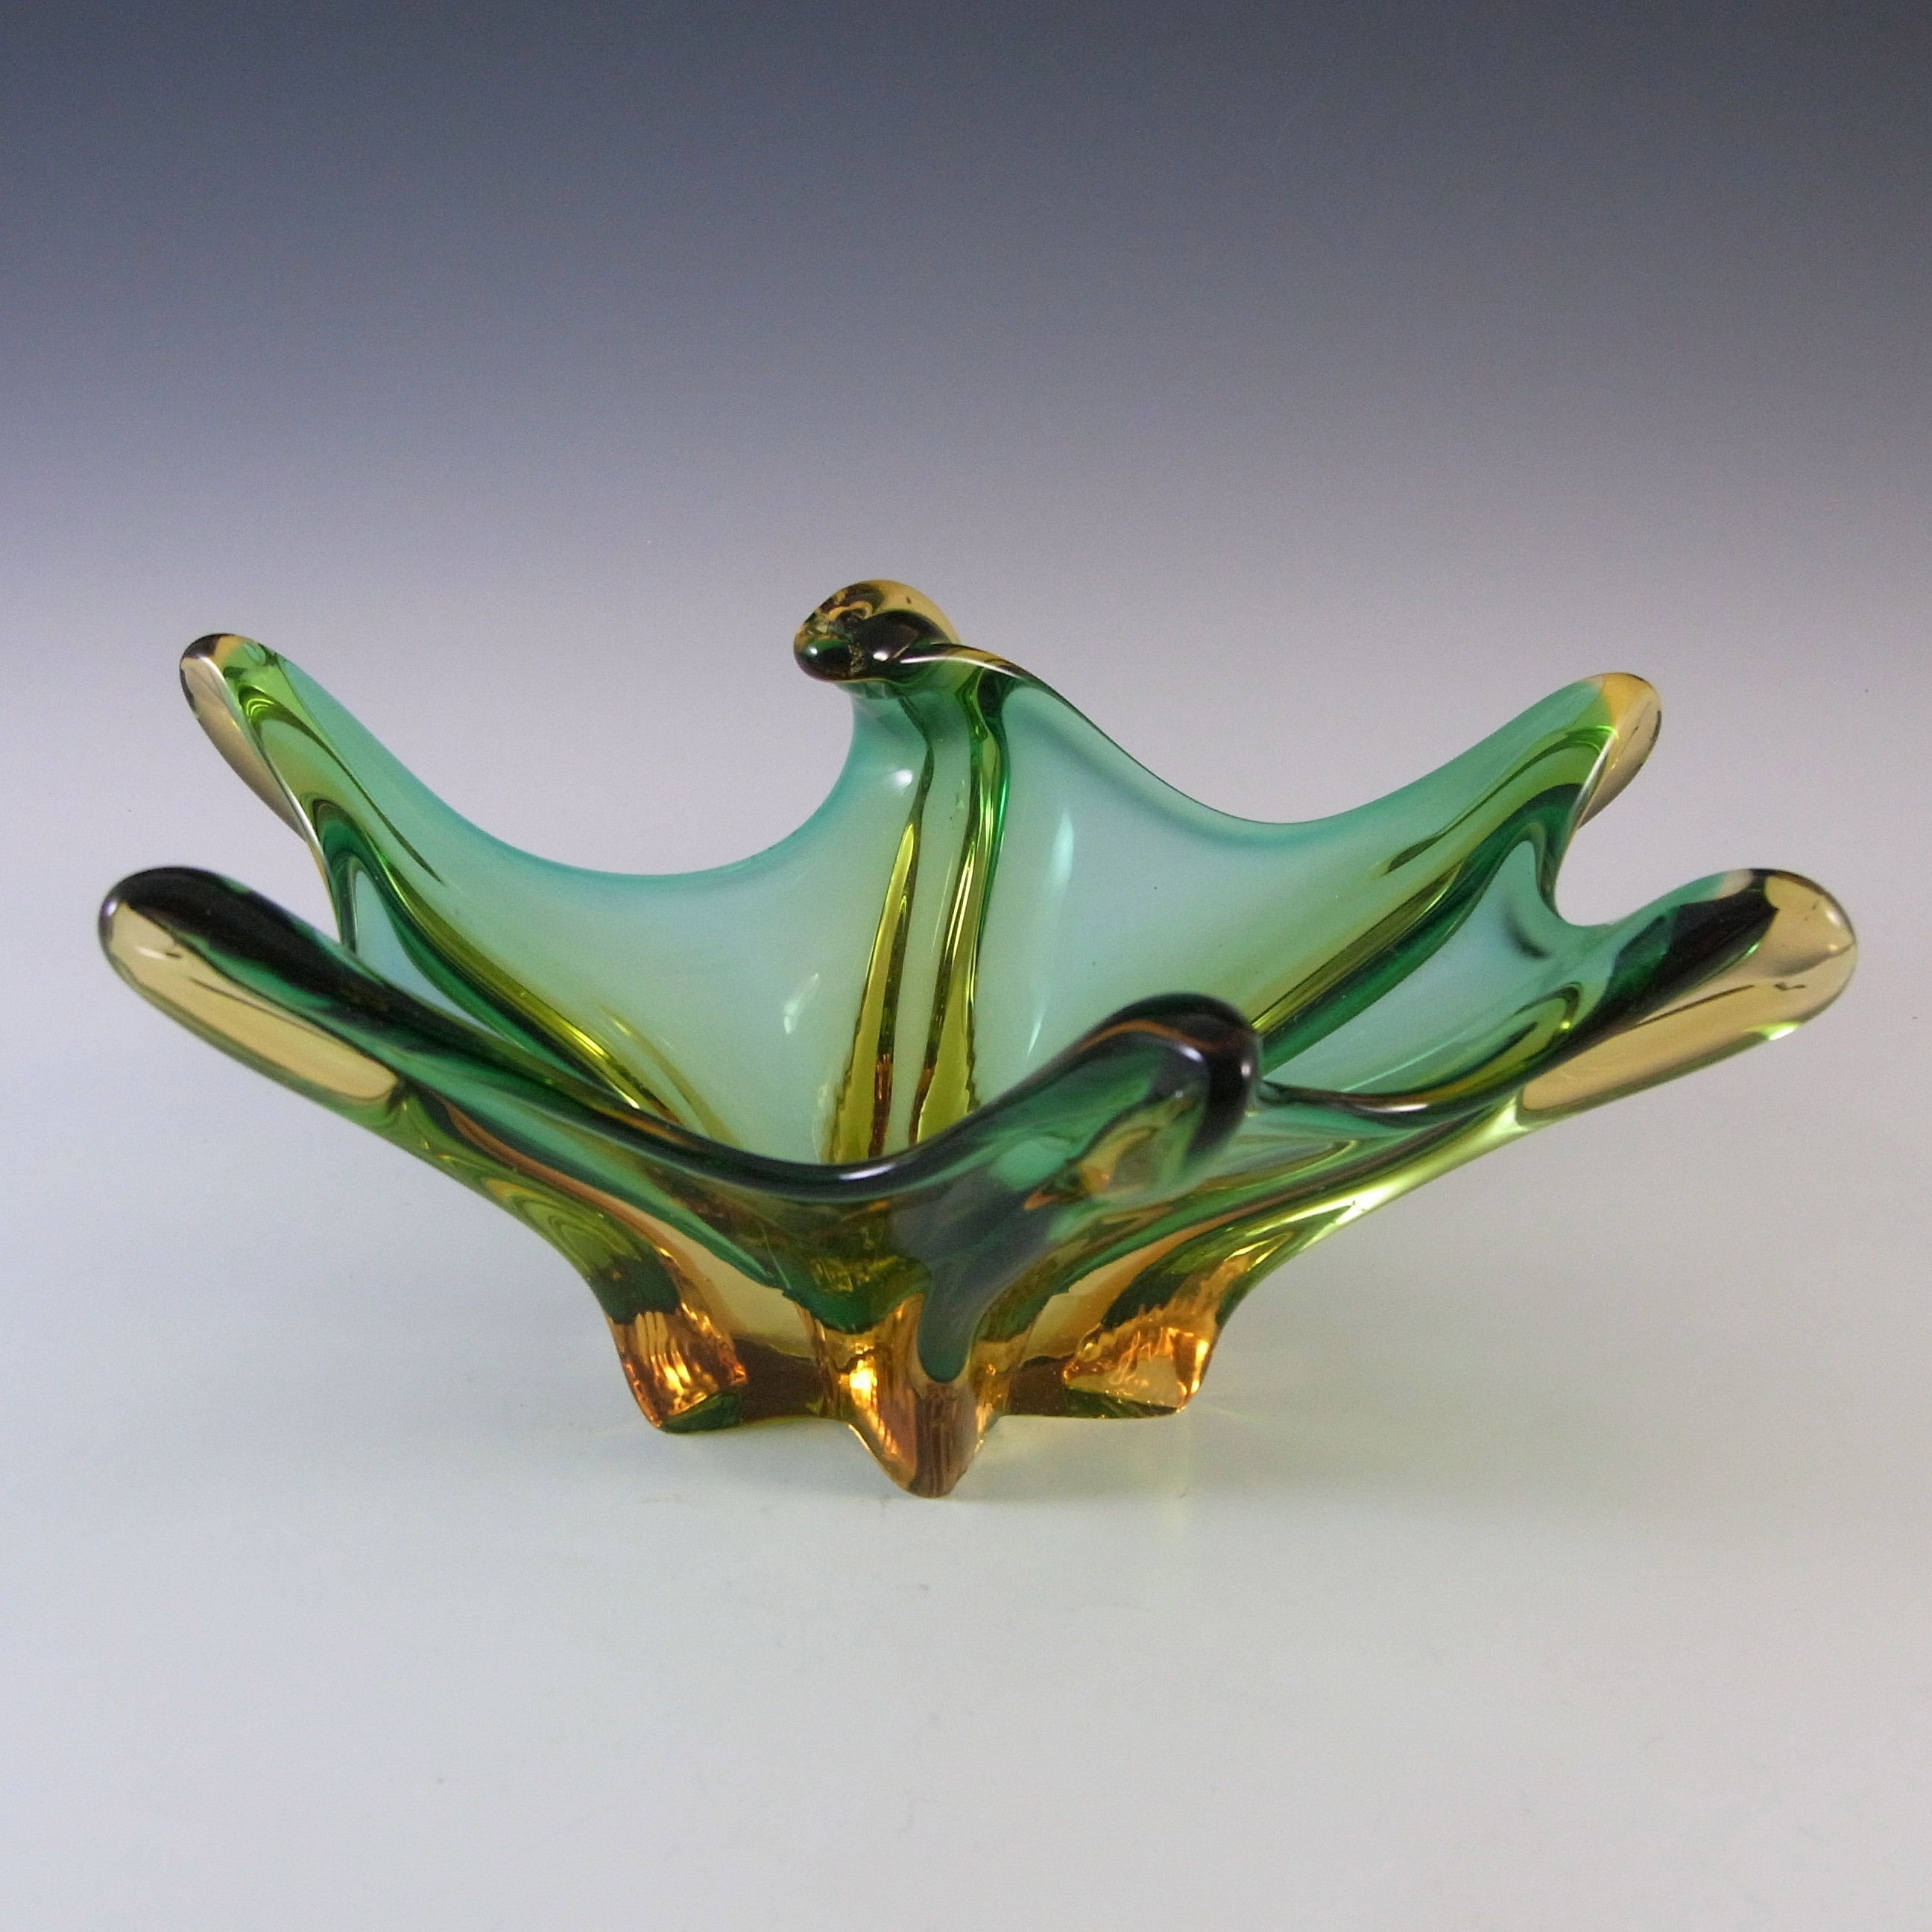 Cristallo Venezia Murano Green & Amber Sommerso Glass Sculpture Bowl - Click Image to Close